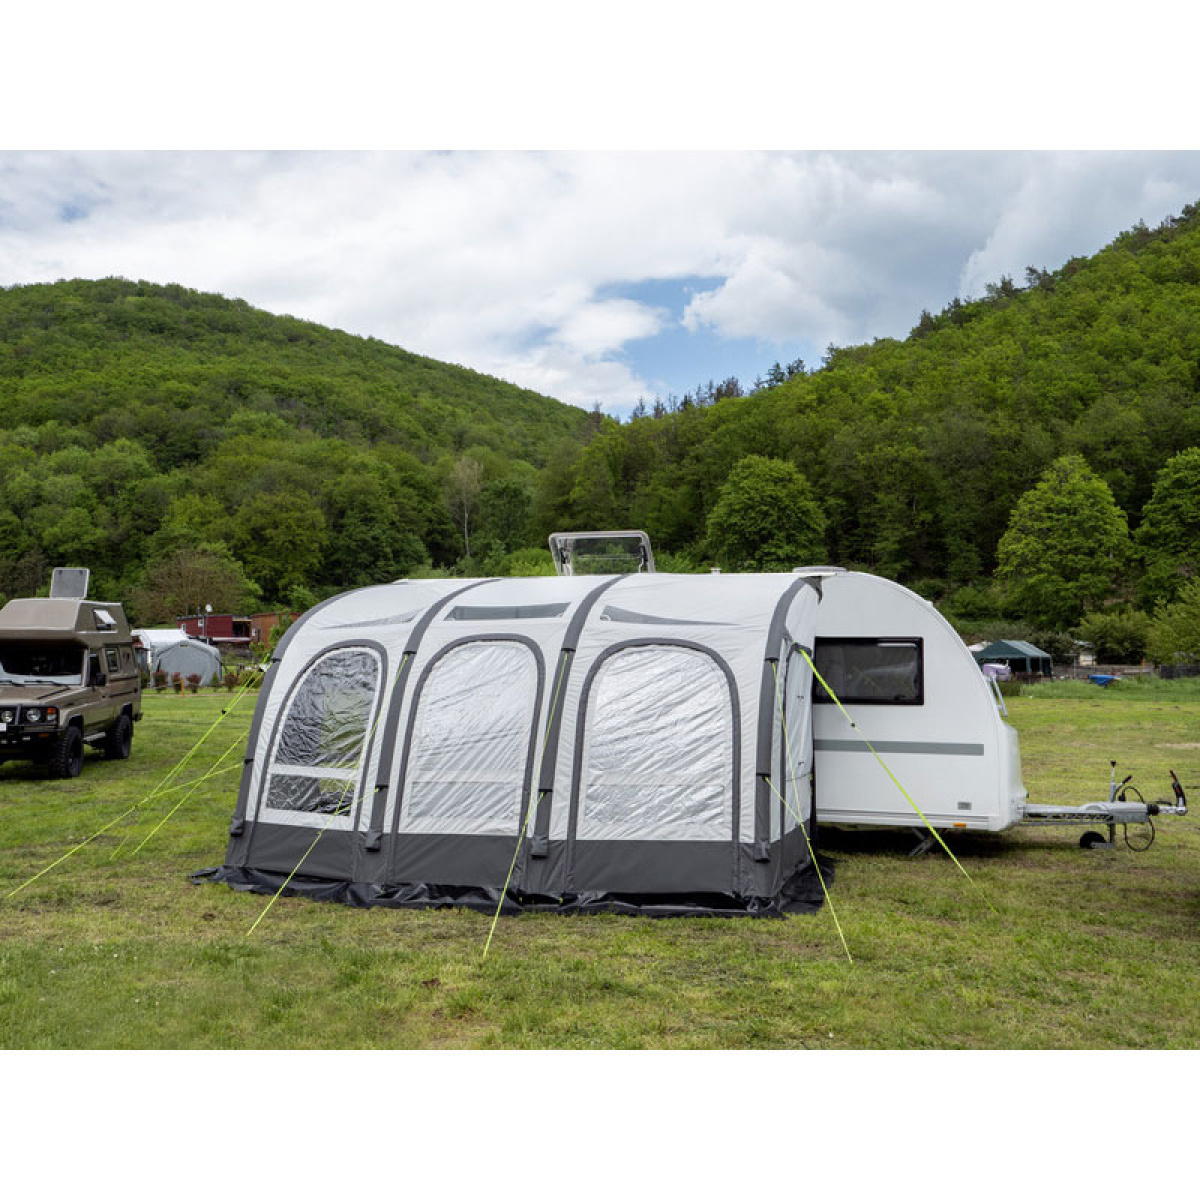 ReimoTent Tavira Air i gruppen Fortelt & Markiser / Fortelt Campingvogn / Oppustelige telte til campingvogne / Reimo lufttelt hos Campmarket (79151)